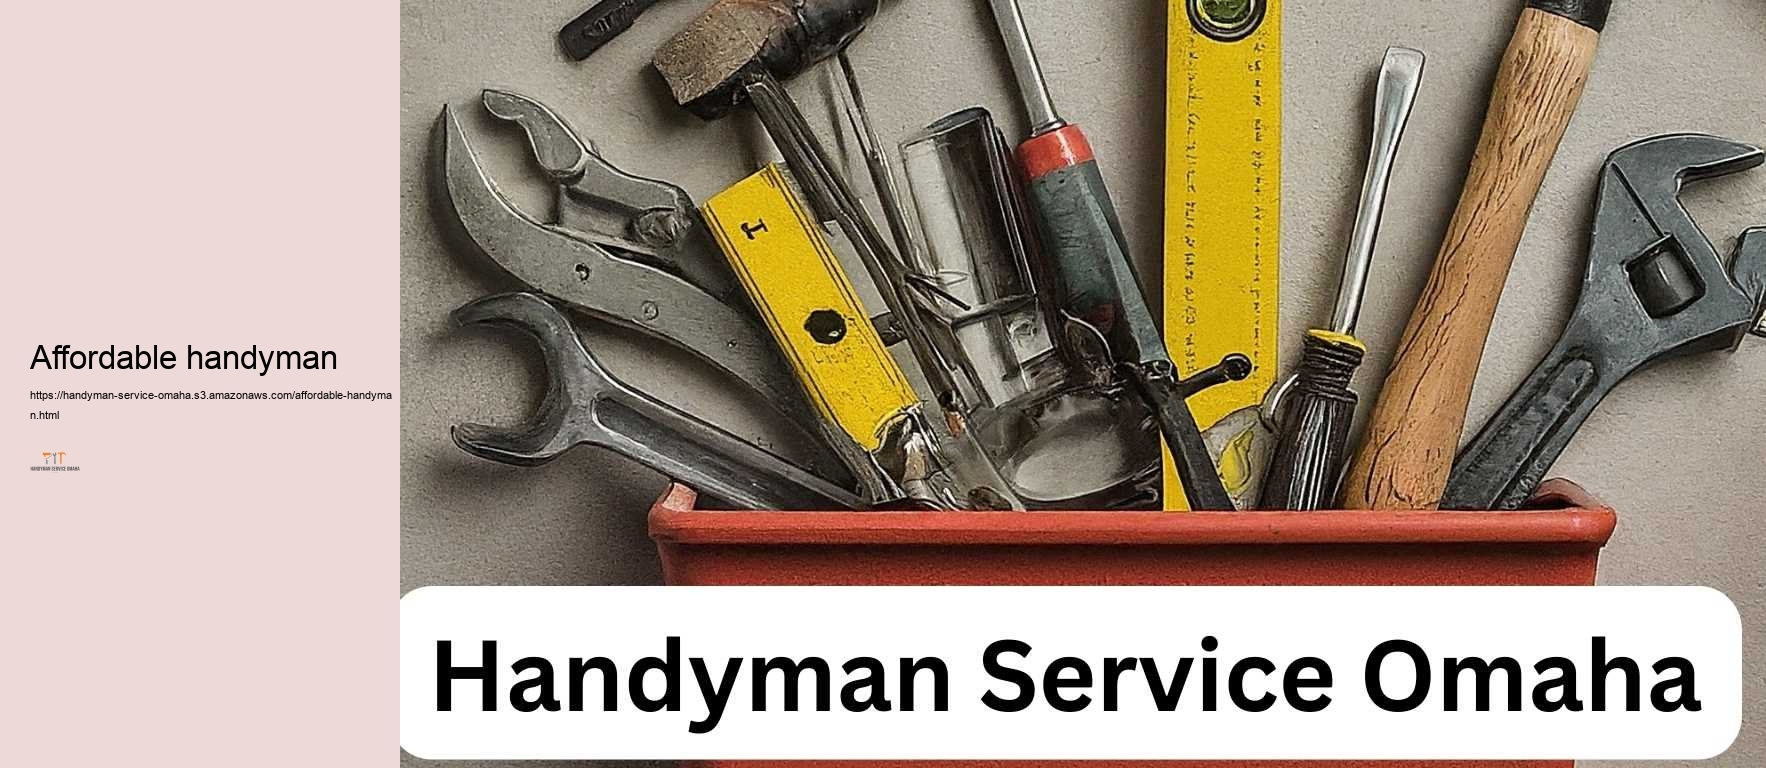 Affordable handyman